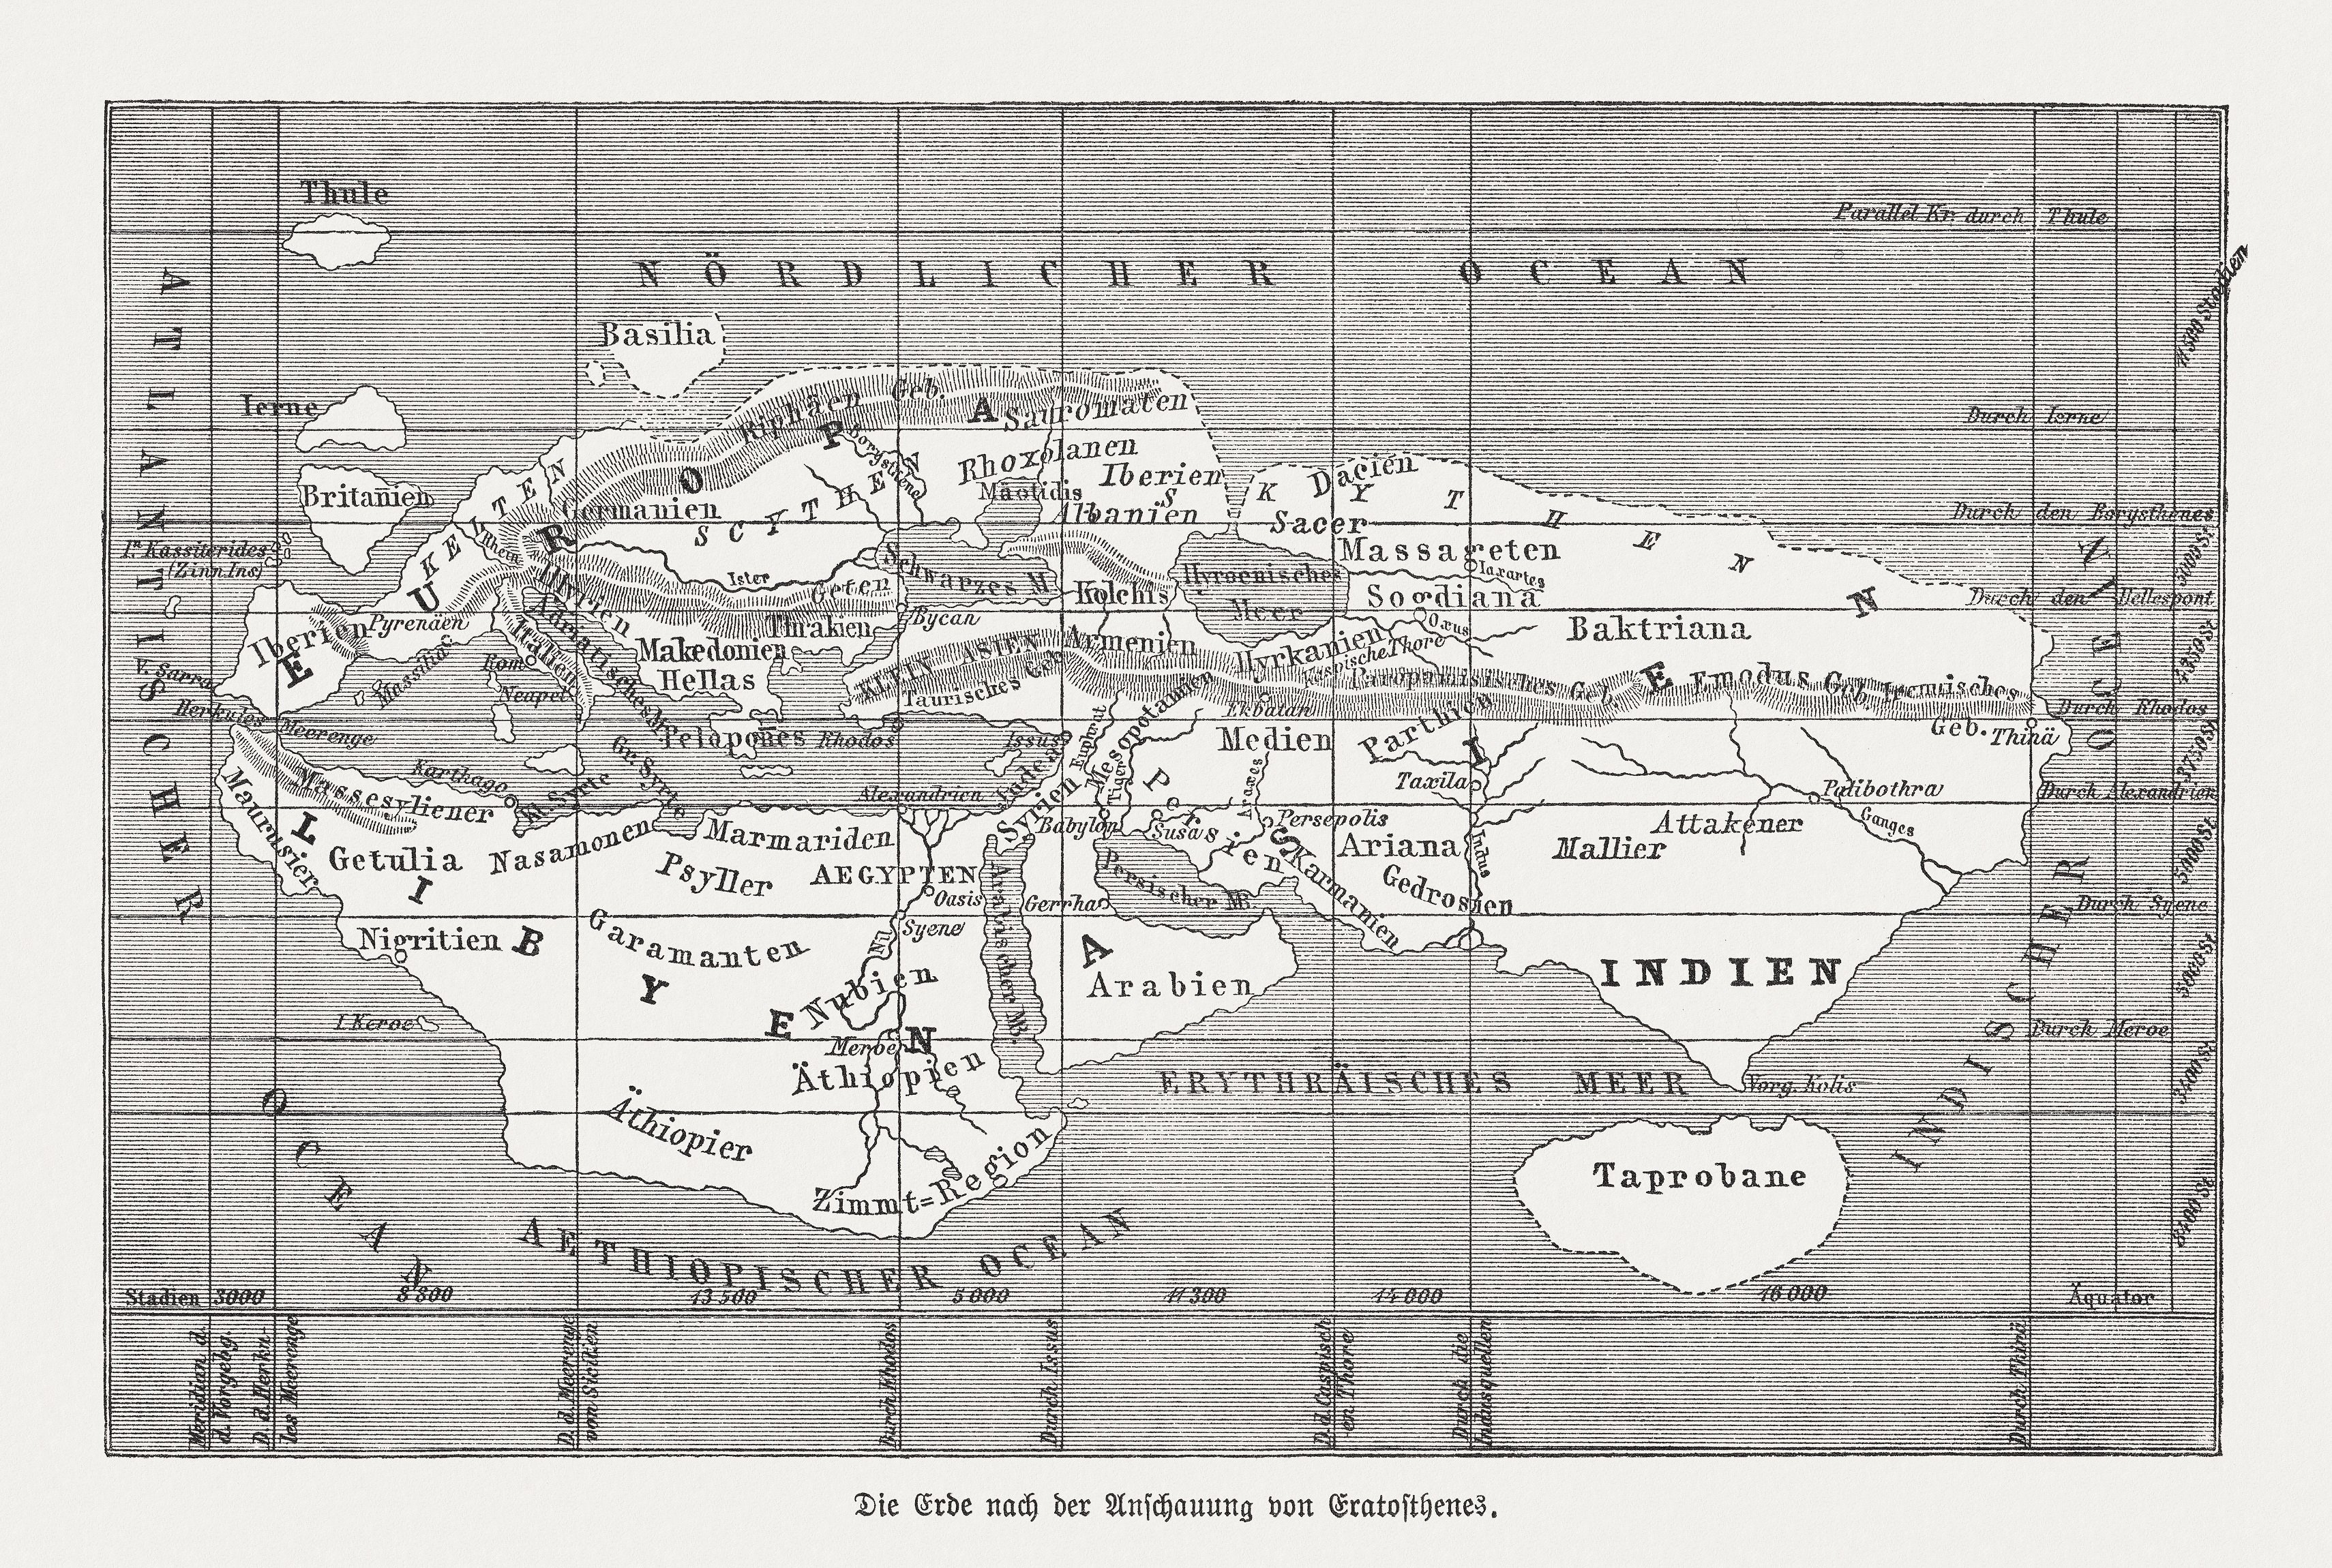 Mapa del mundo según Eratóstenes de Cirene. Grabado en madera, publicado en 1888.